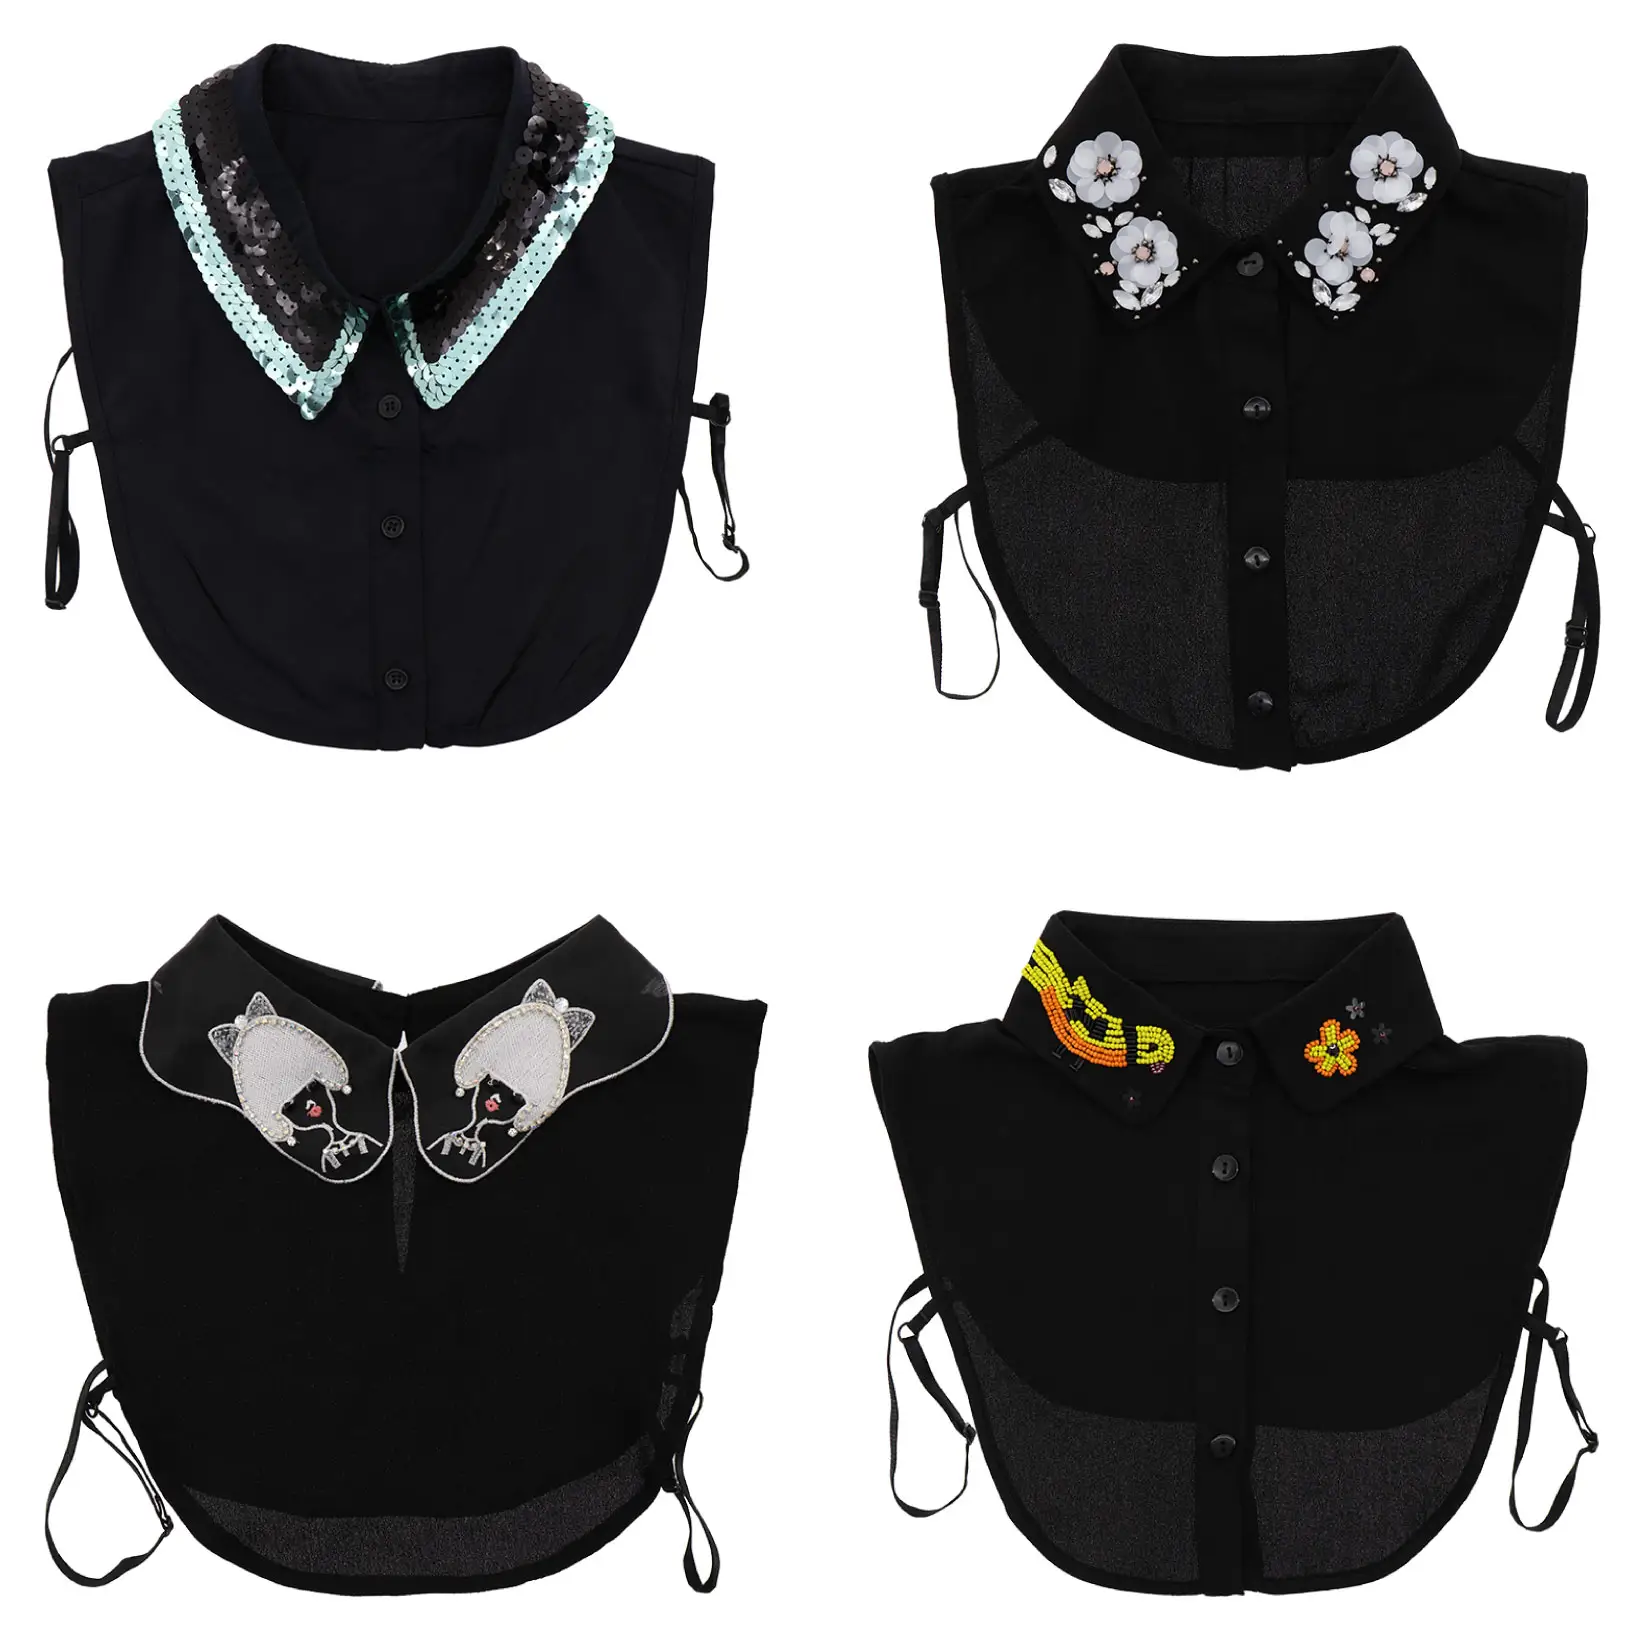 Didamao latest design black sleeveless chiffon half lady shirts/blouse